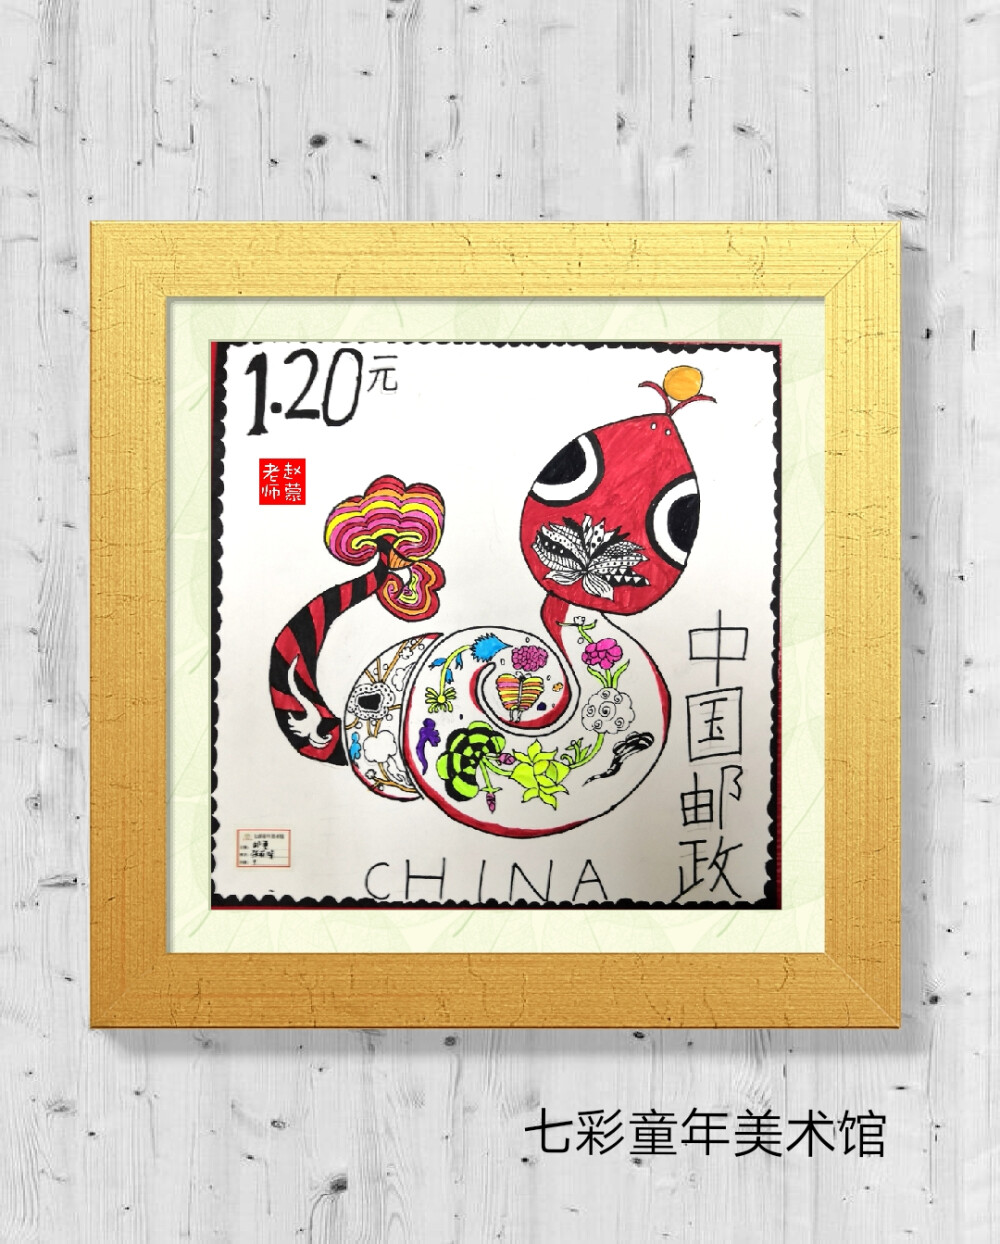 儿童美术，儿童线描
十二生肖主题，邮票